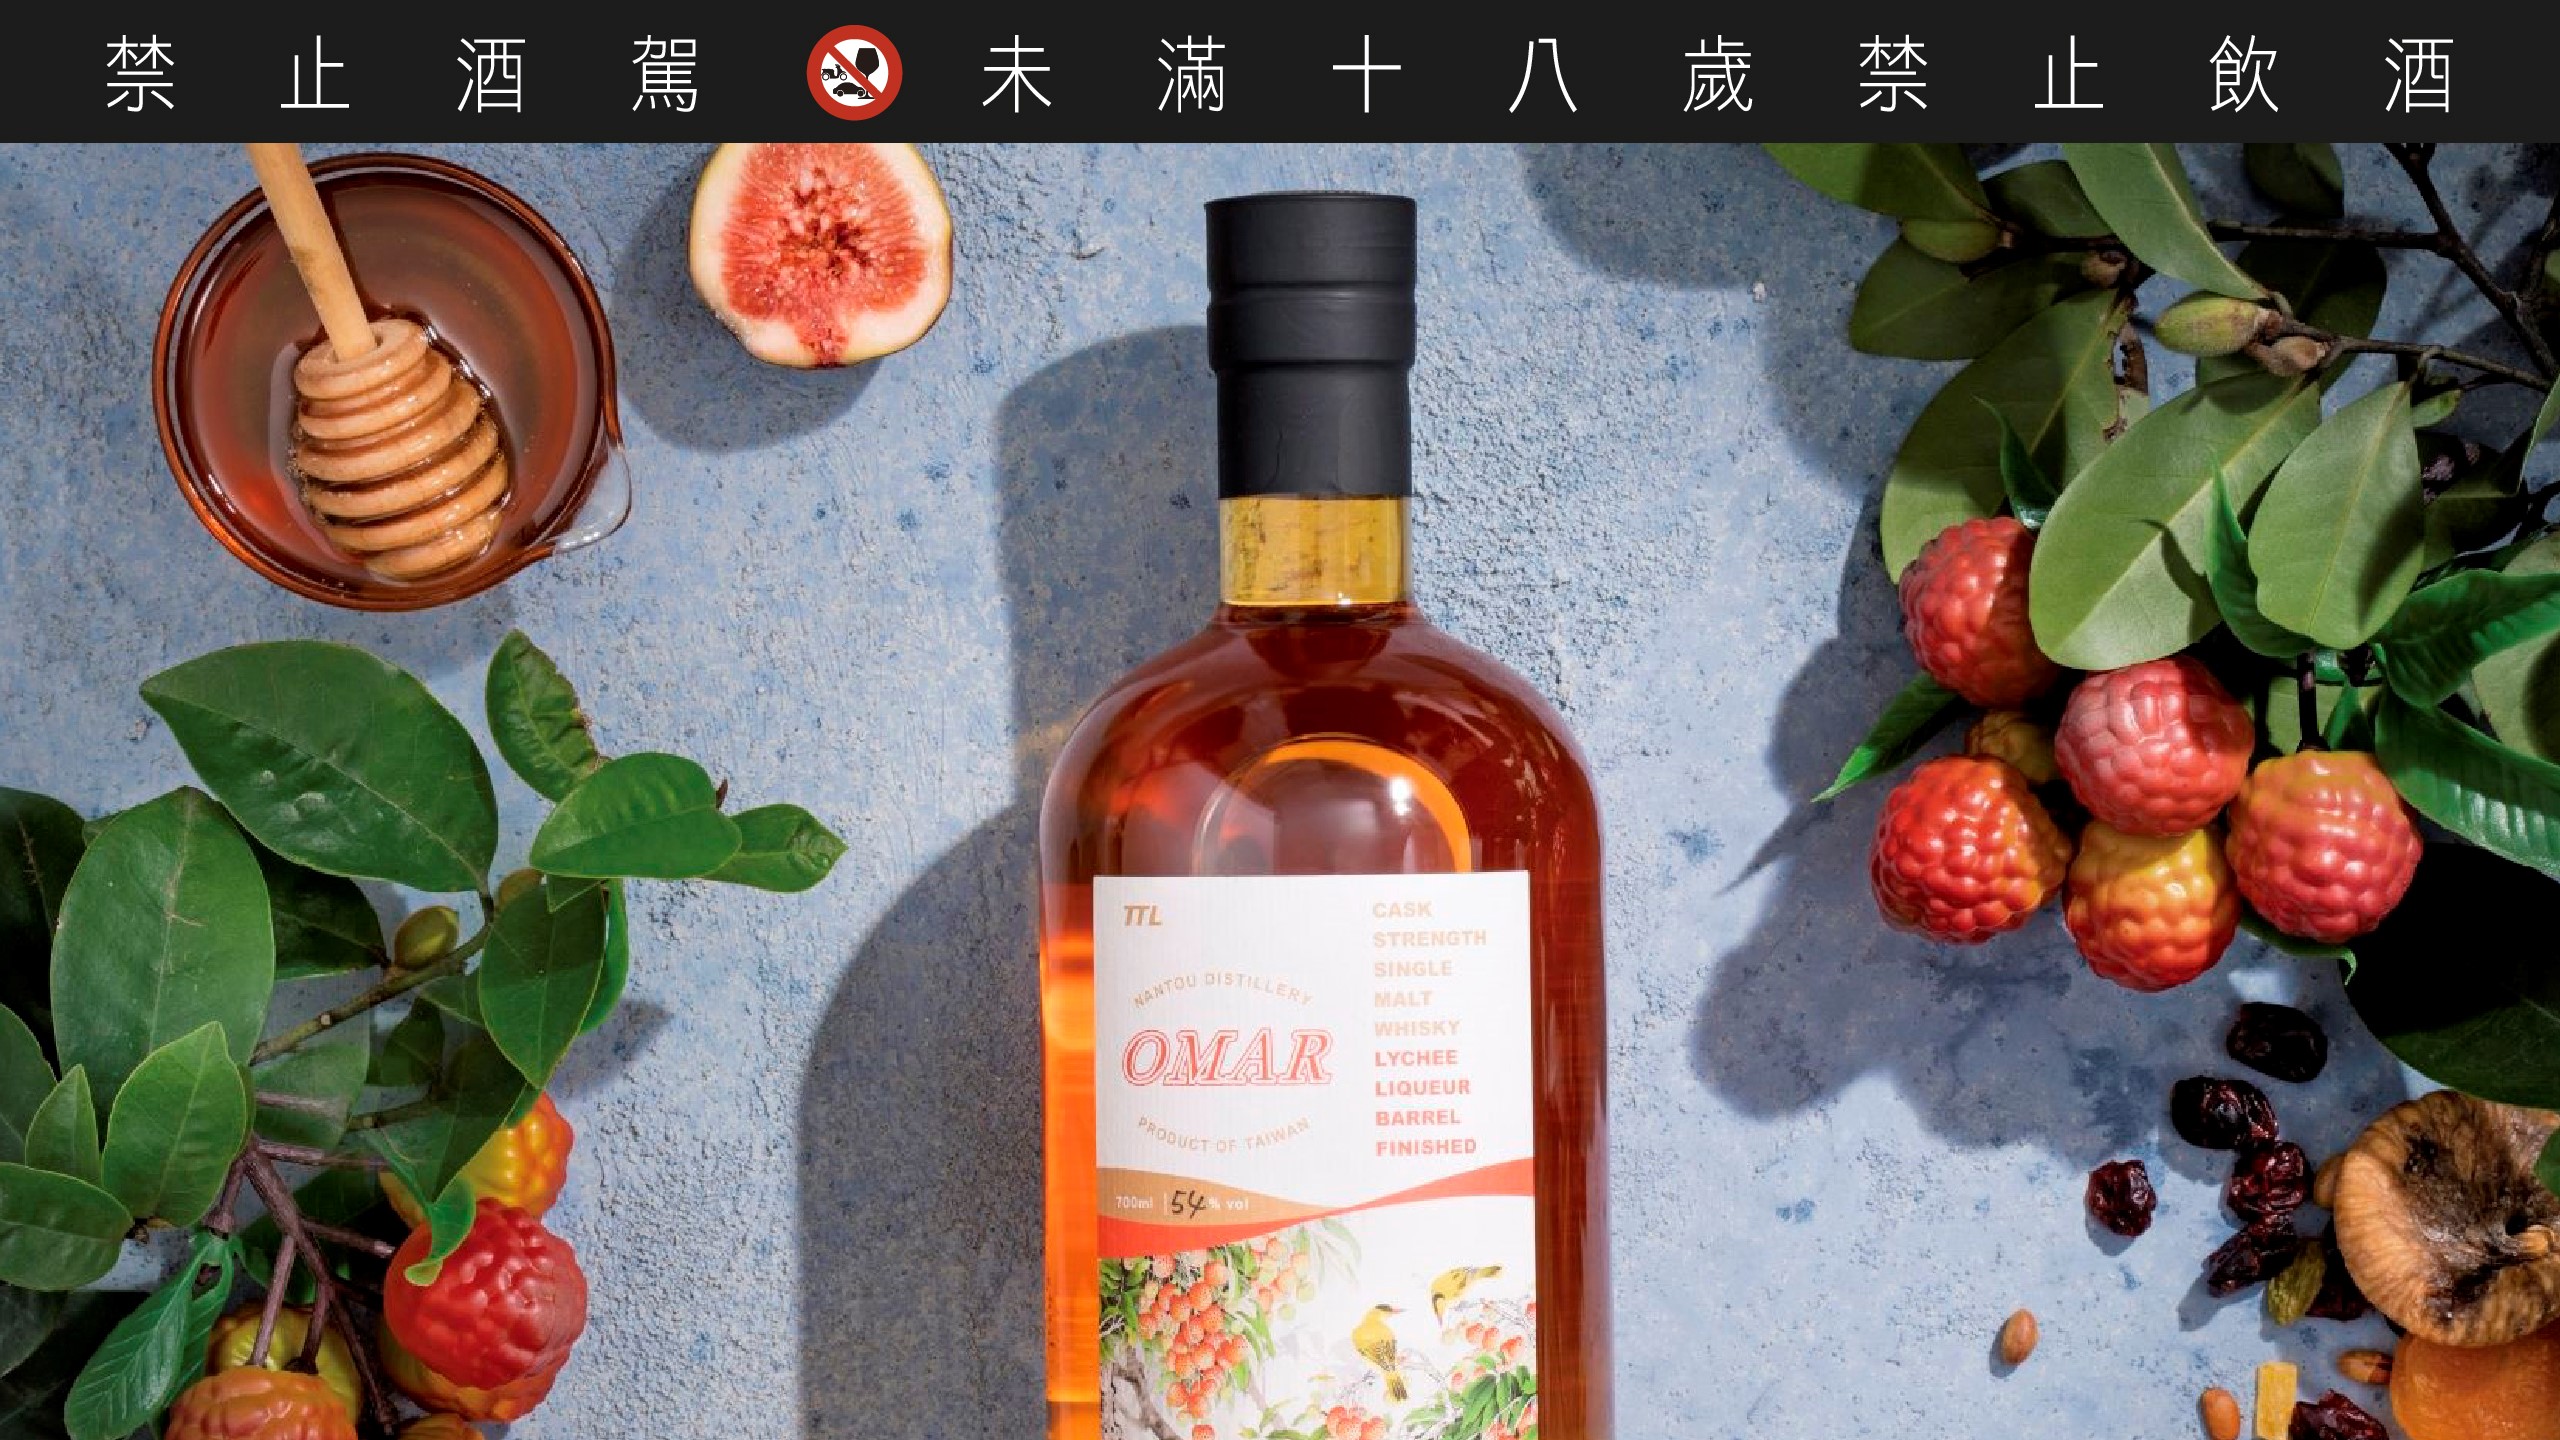 台灣菸酒的南投蒸餾場原本就擅長釀造水果酒，OMAR 利用台灣獨有的荔枝酒酒桶來陳釀威士忌，徹底發揮台灣在地的風土特色。